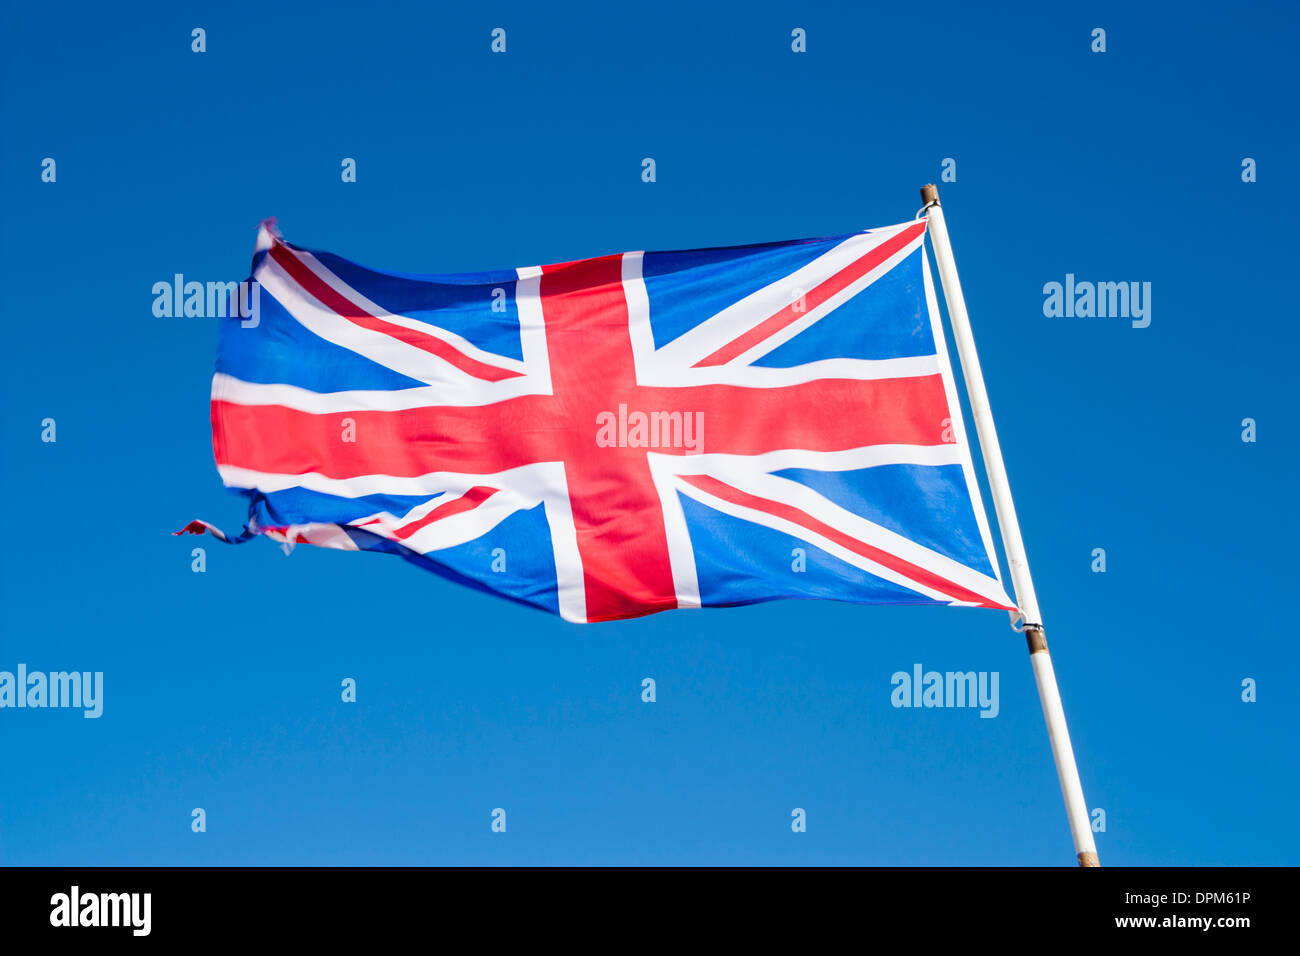 Union Jack flag against blue sky Banque D'Images